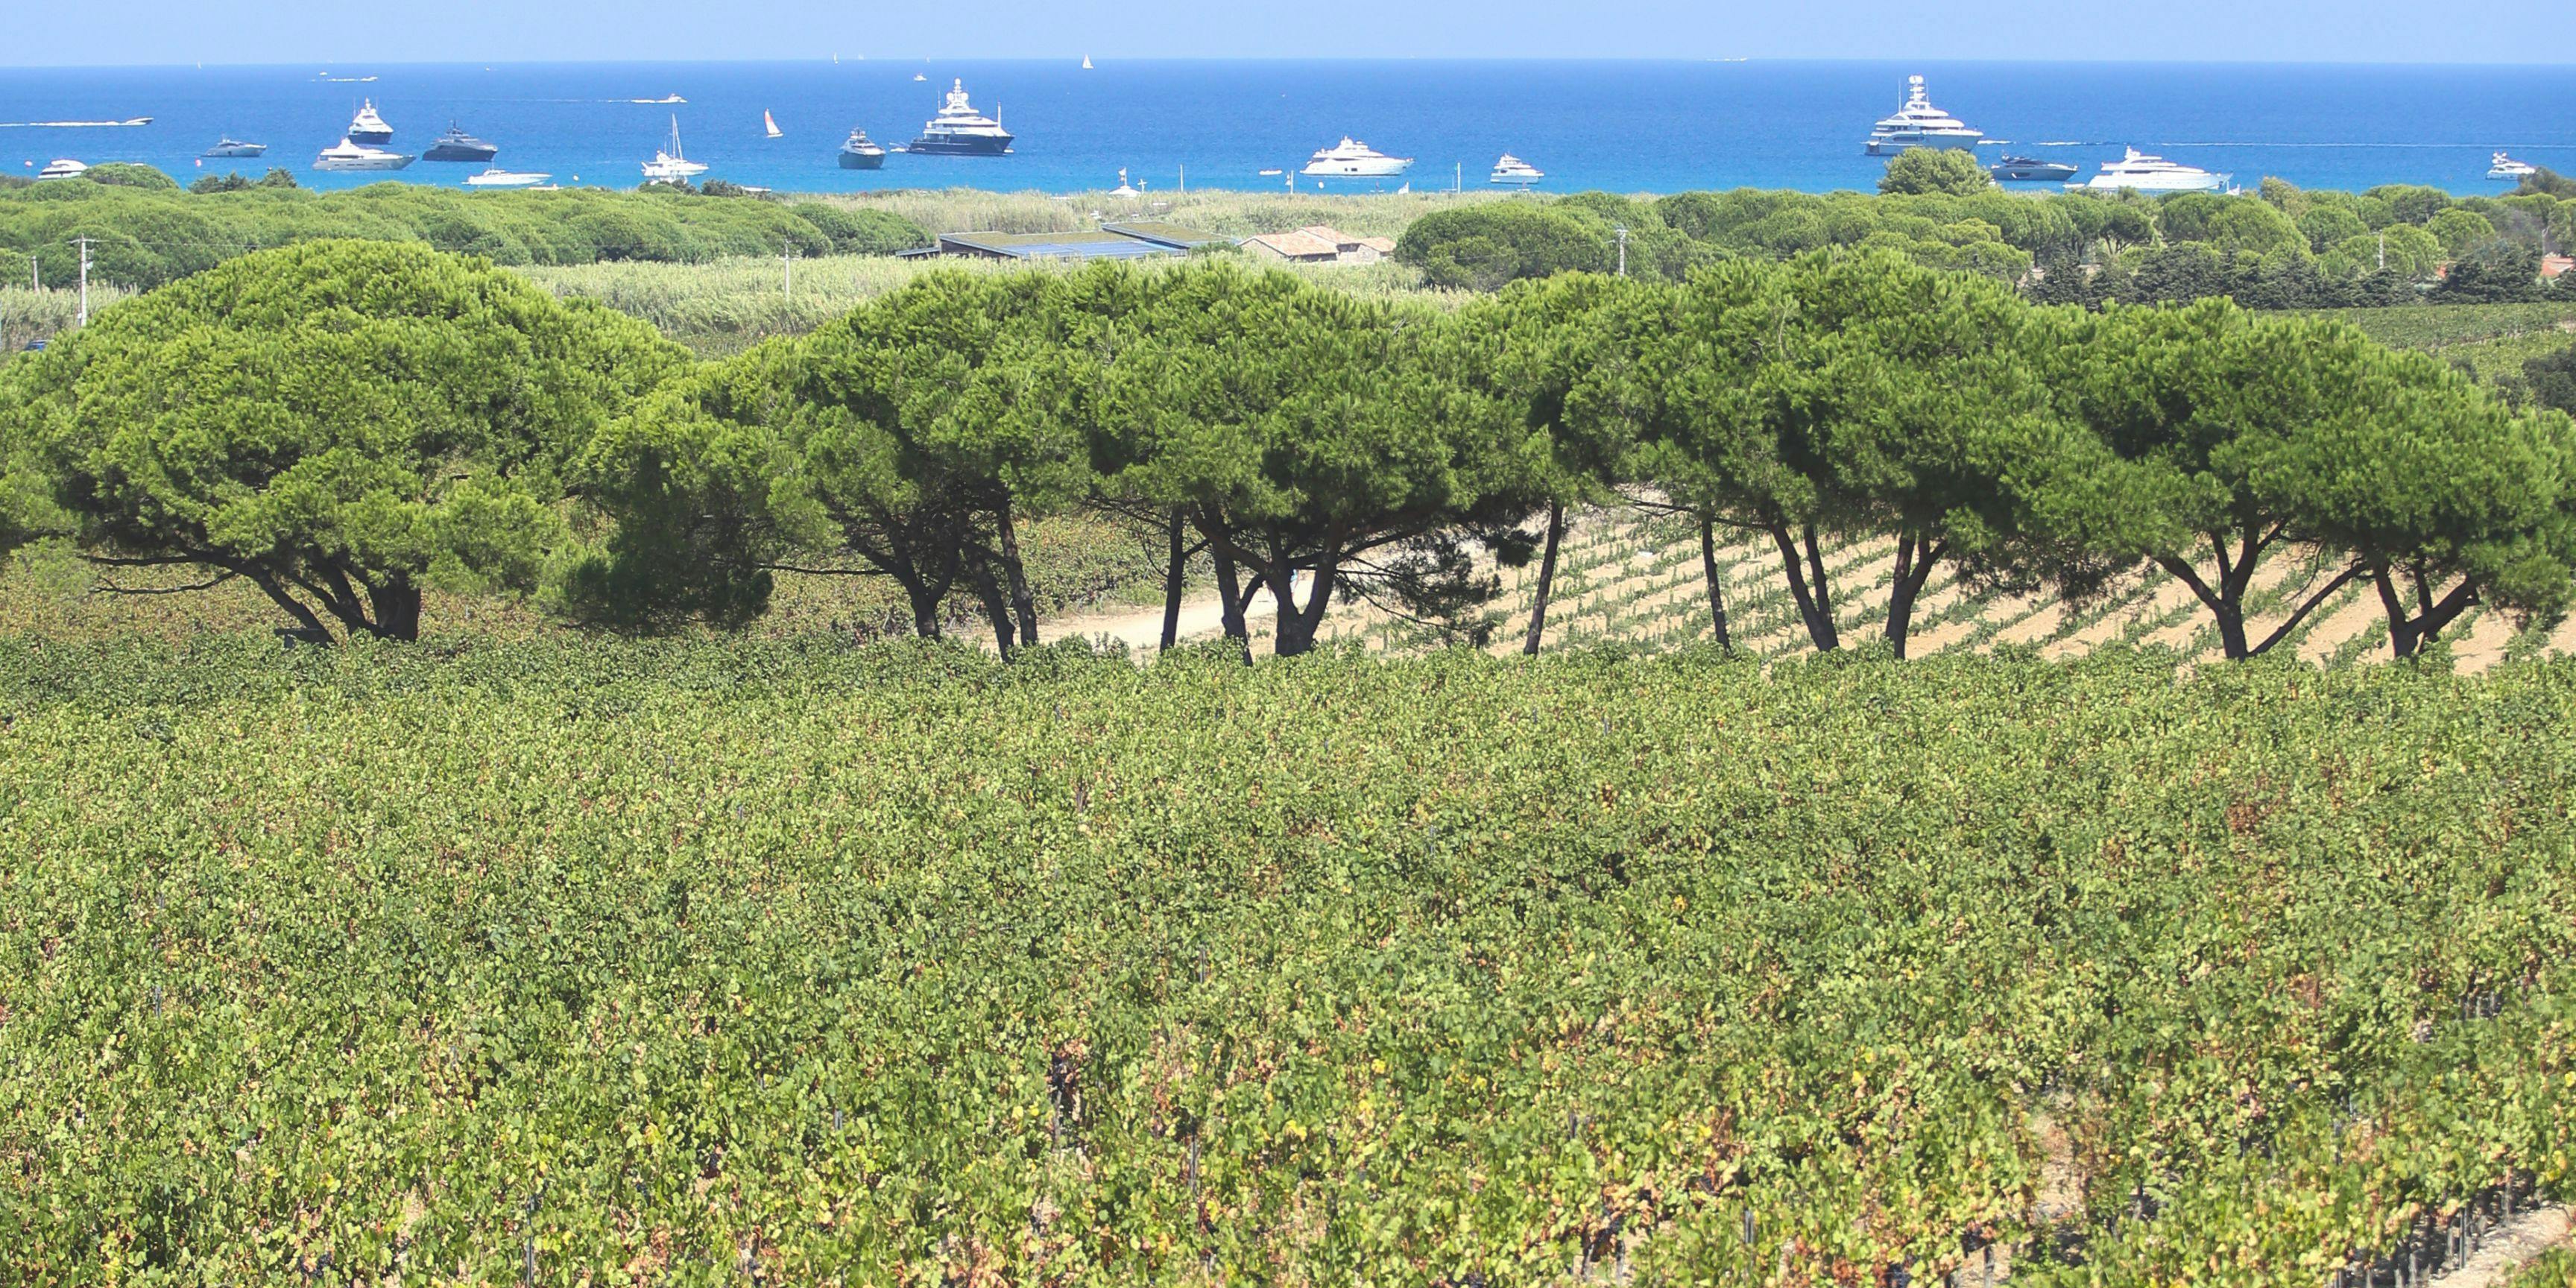 Les vignes du golfe de Saint-Tropez bénéficient d'une très belle vue.